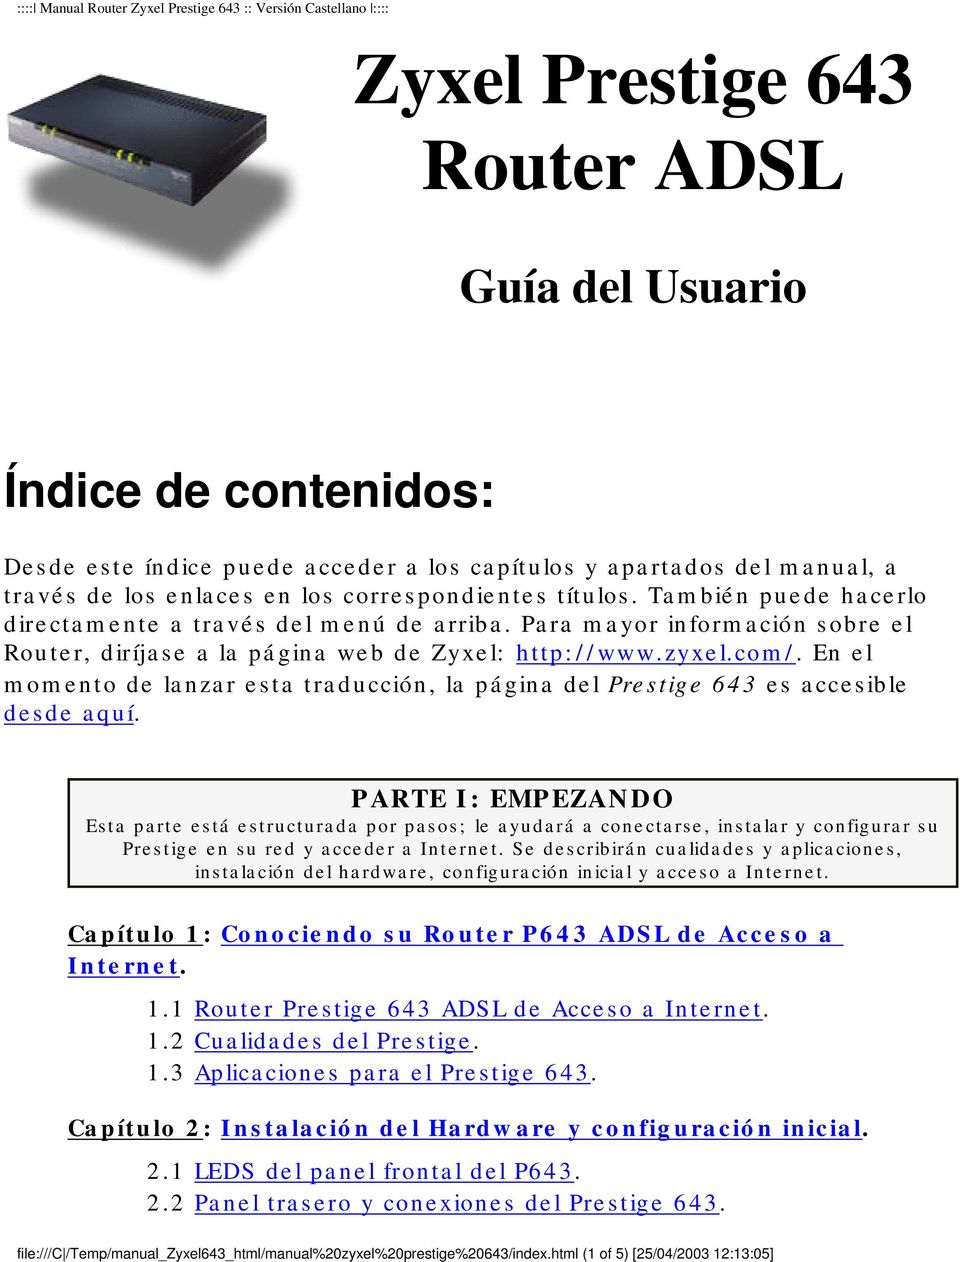 Para mayor información sobre el Router, diríjase a la página web de Zyxel: http://www.zyxel.com/. En el momento de lanzar esta traducción, la página del Prestige 643 es accesible desde aquí.